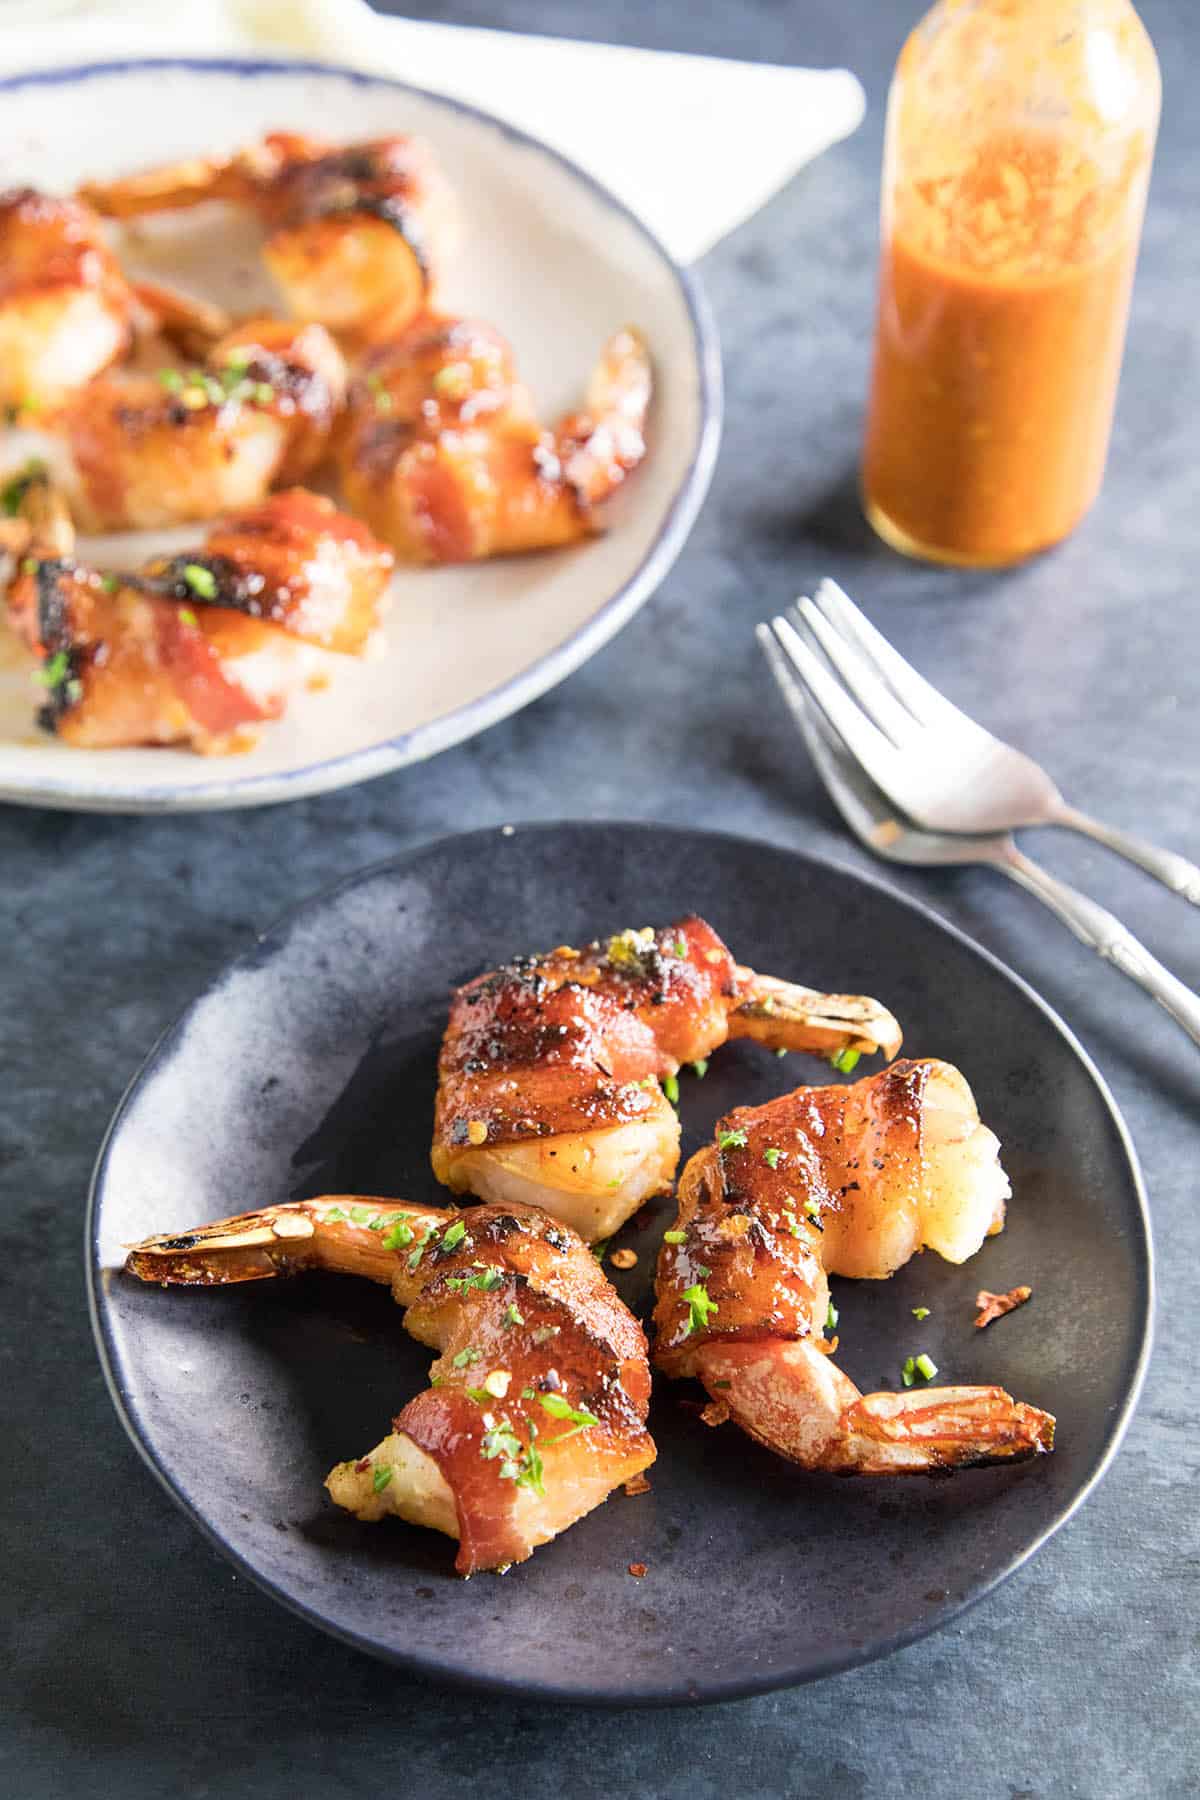 Habanero-Honey Glazed Bacon Wrapped Shrimp served on a plate.